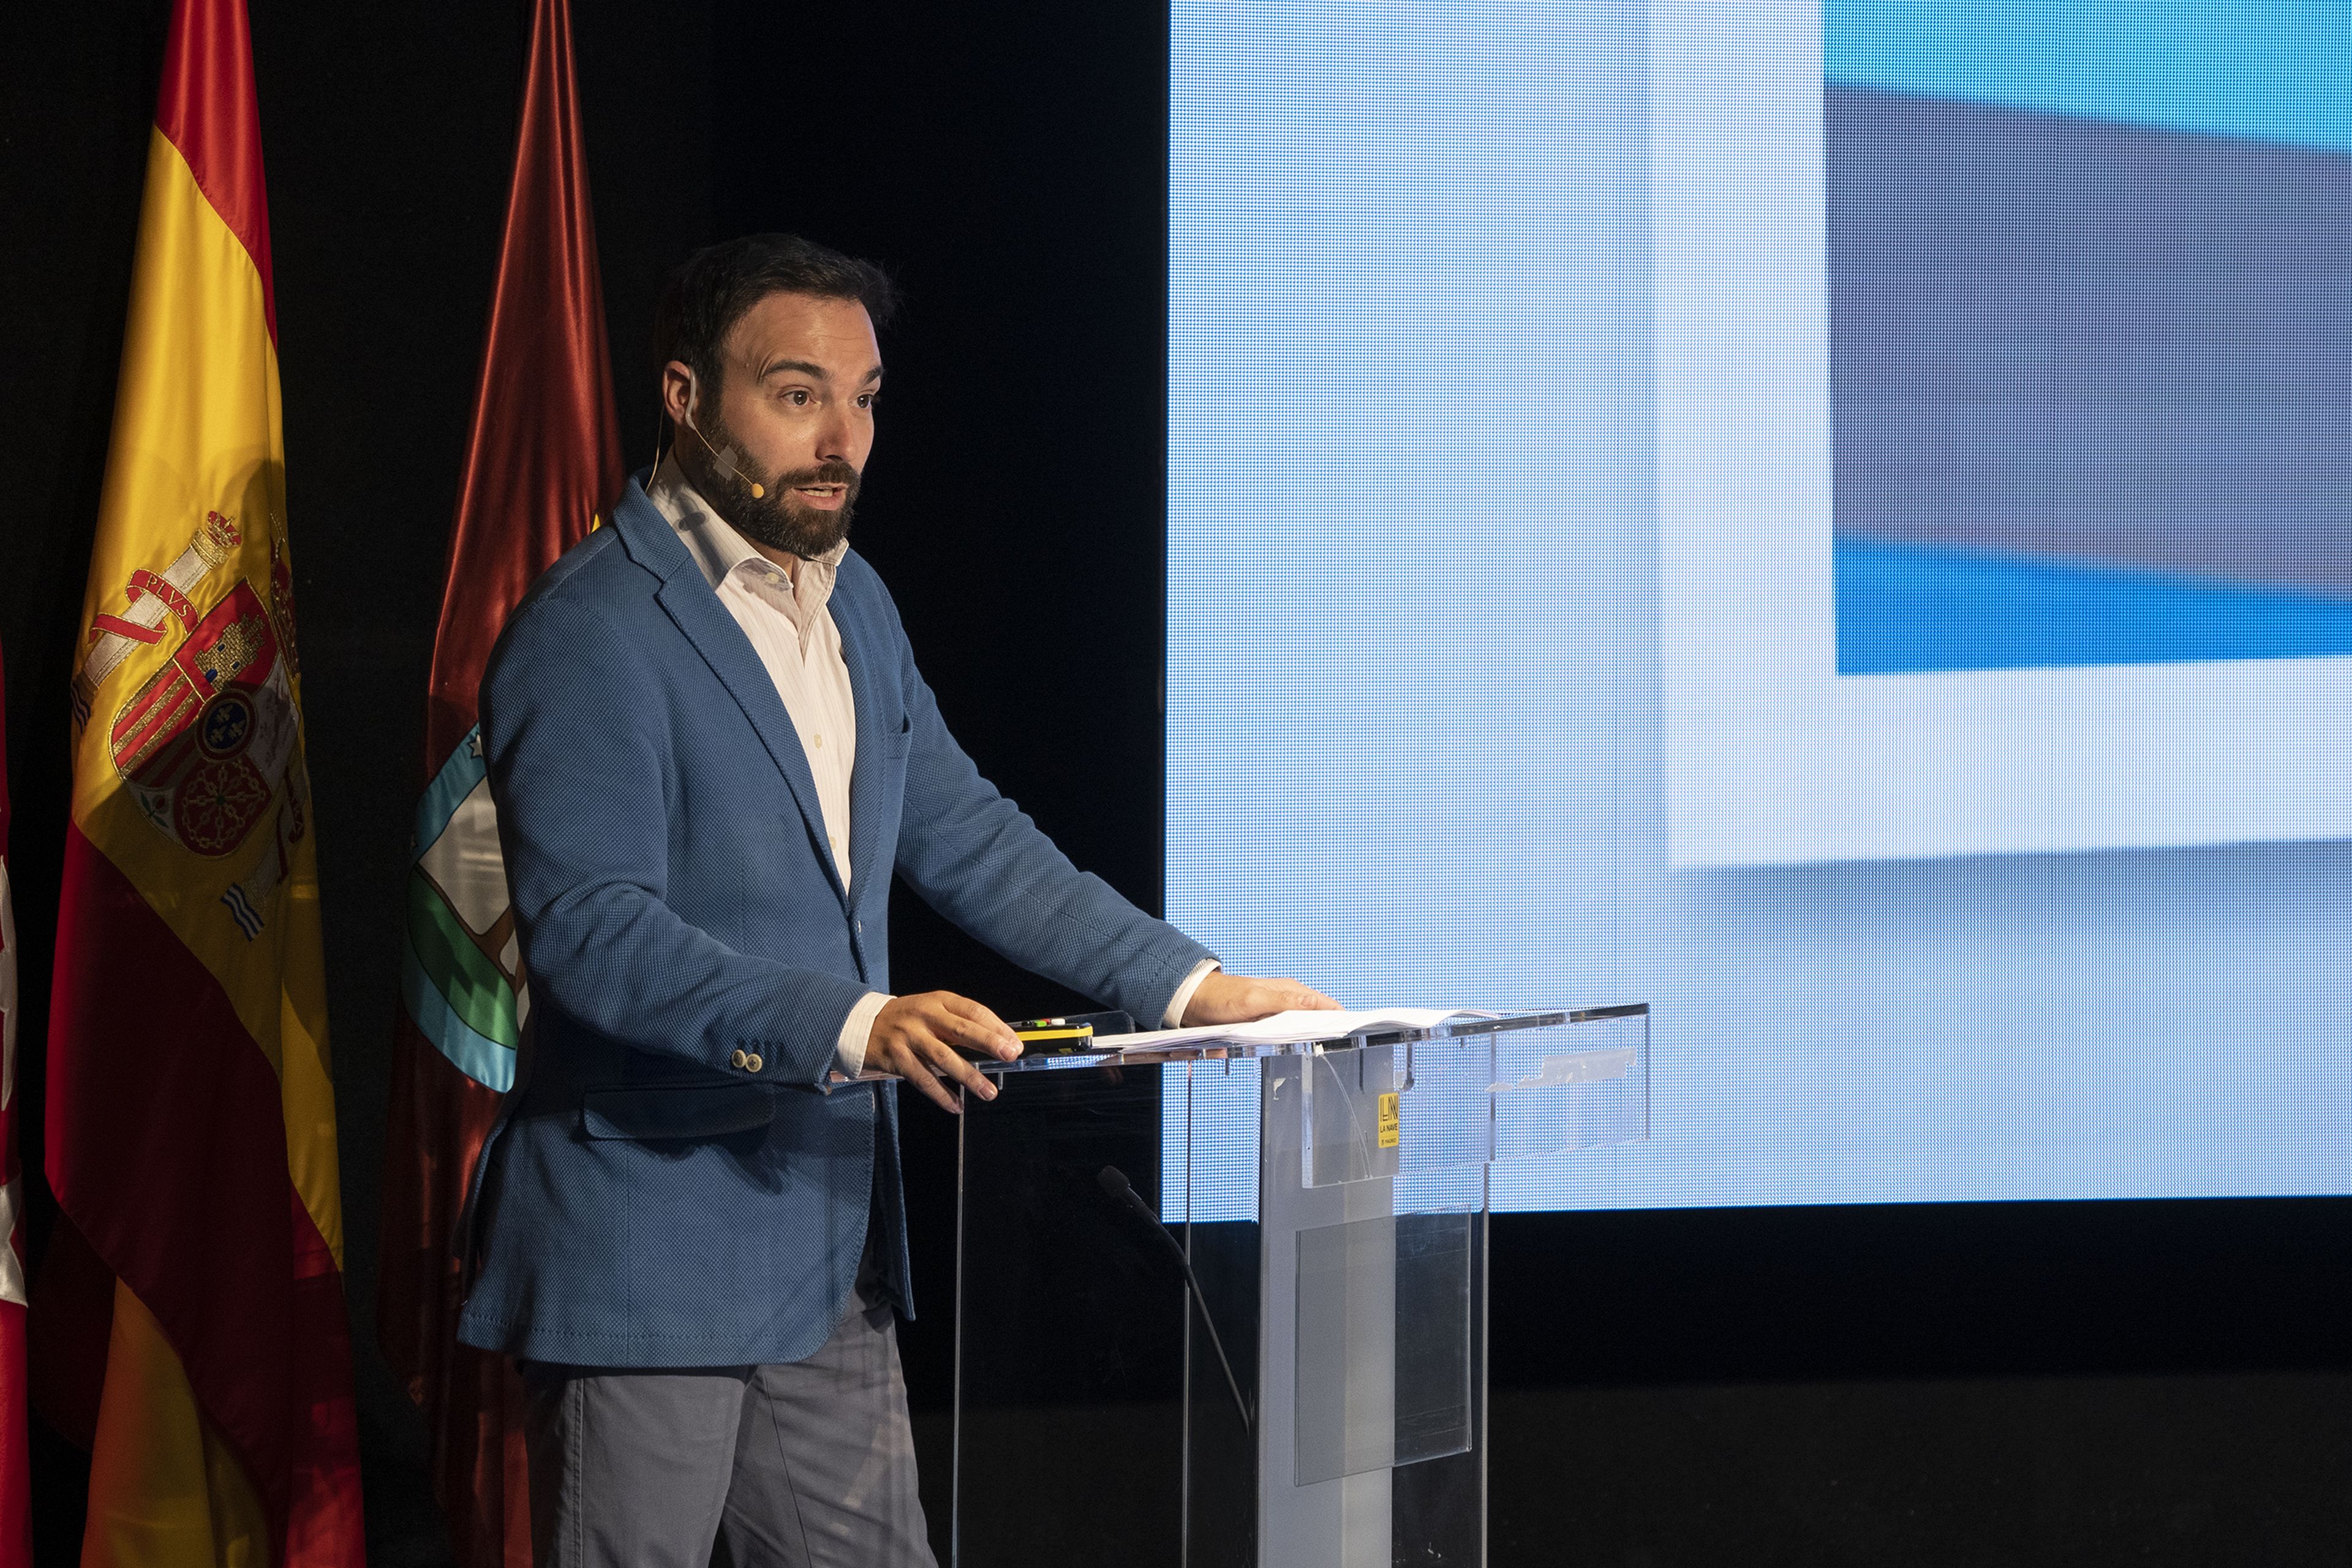 Ángel Niño, Delegado del Área de Innovación y Emprendimiento del Ayuntamiento de Madrid. Foto: La Nave.